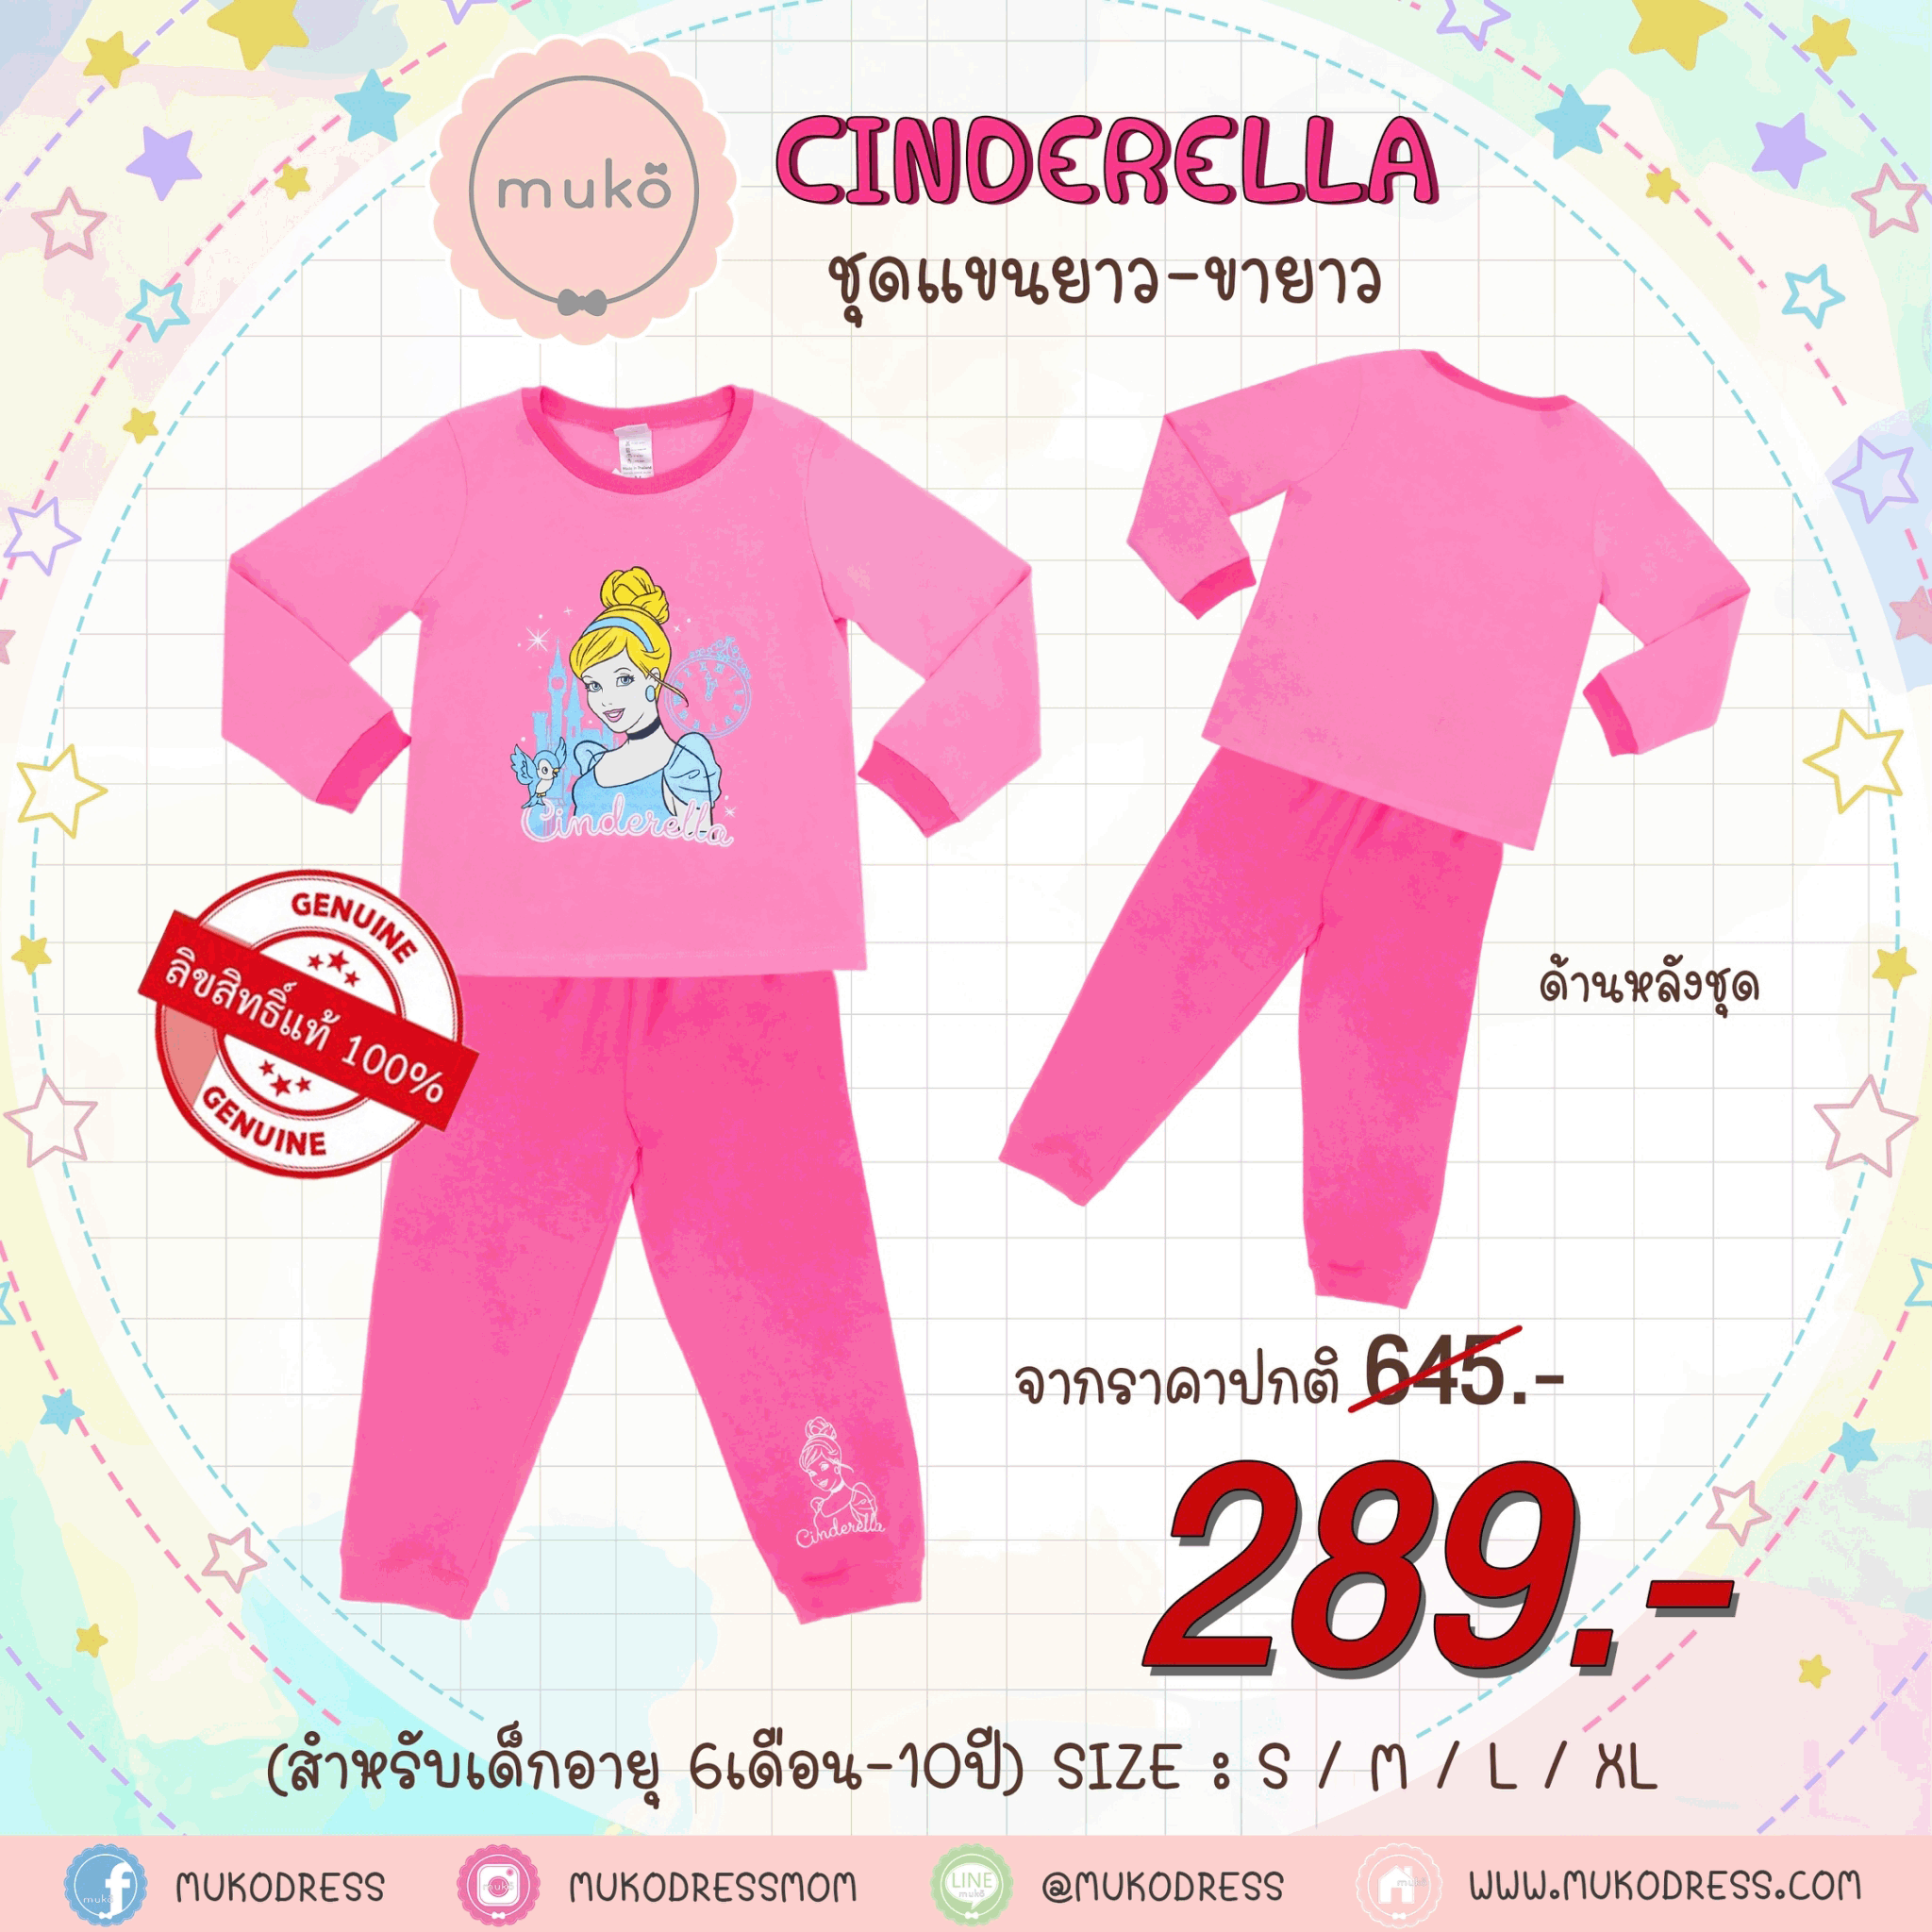 ชุดเด็ก 5-6 ขวบ แขนยาว-ขายาว (Size M) DPC127-05-XL-Pink M ลาย เจ้าหญิงซินเดอเรลล่า Cinderella สีชมพู (เจ้าหญิงและนกน้อย)